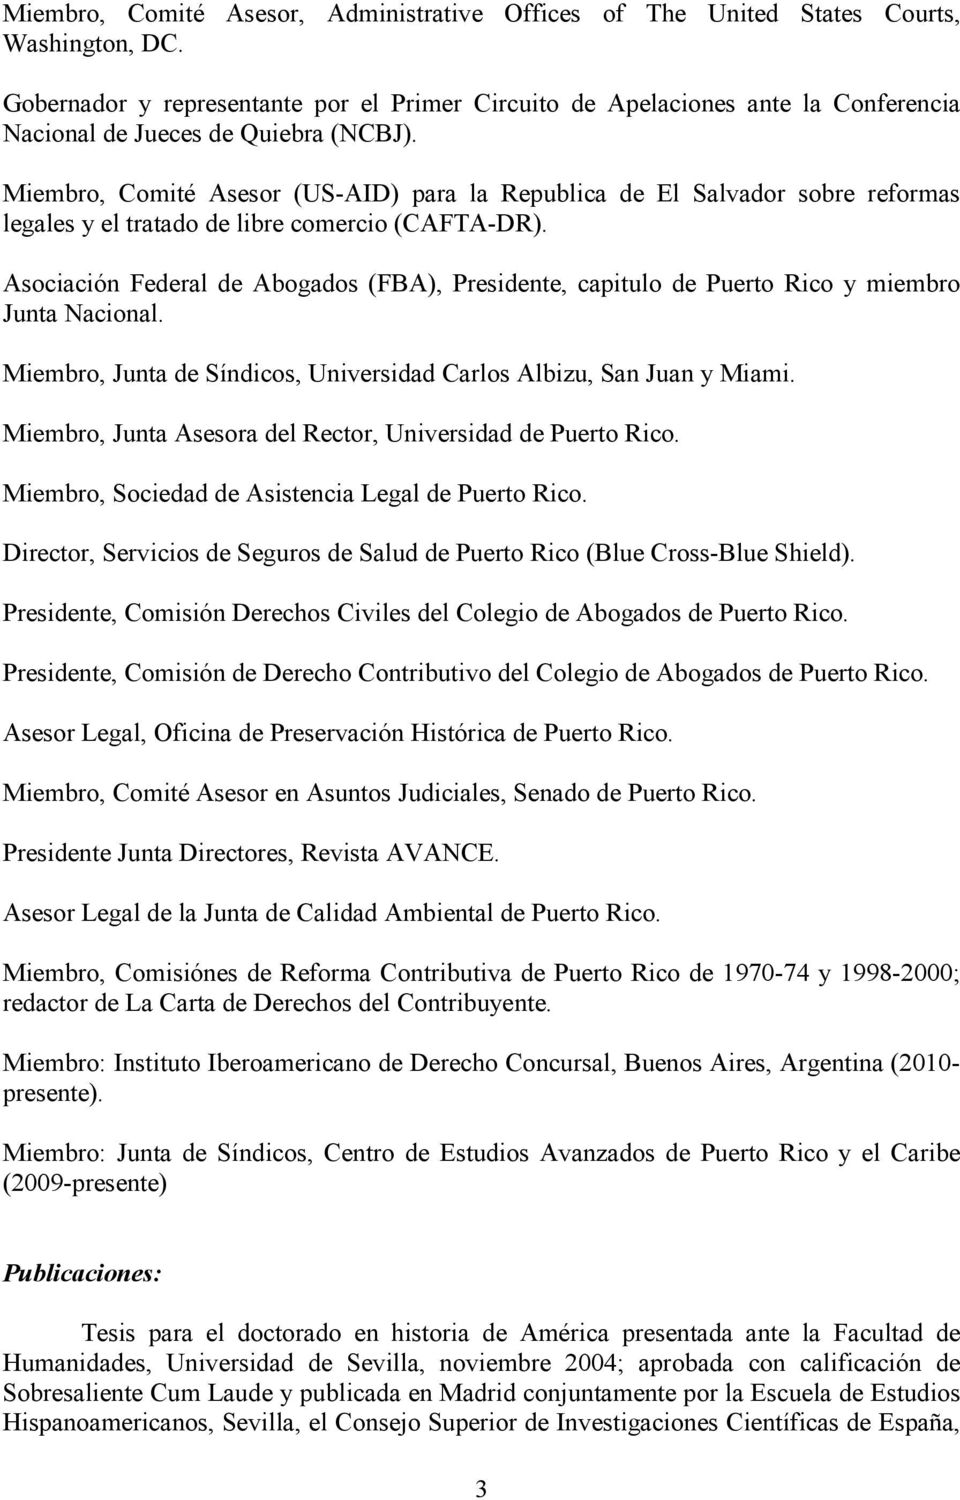 Miembro, Comité Asesor (US-AID) para la Republica de El Salvador sobre reformas legales y el tratado de libre comercio (CAFTA-DR).